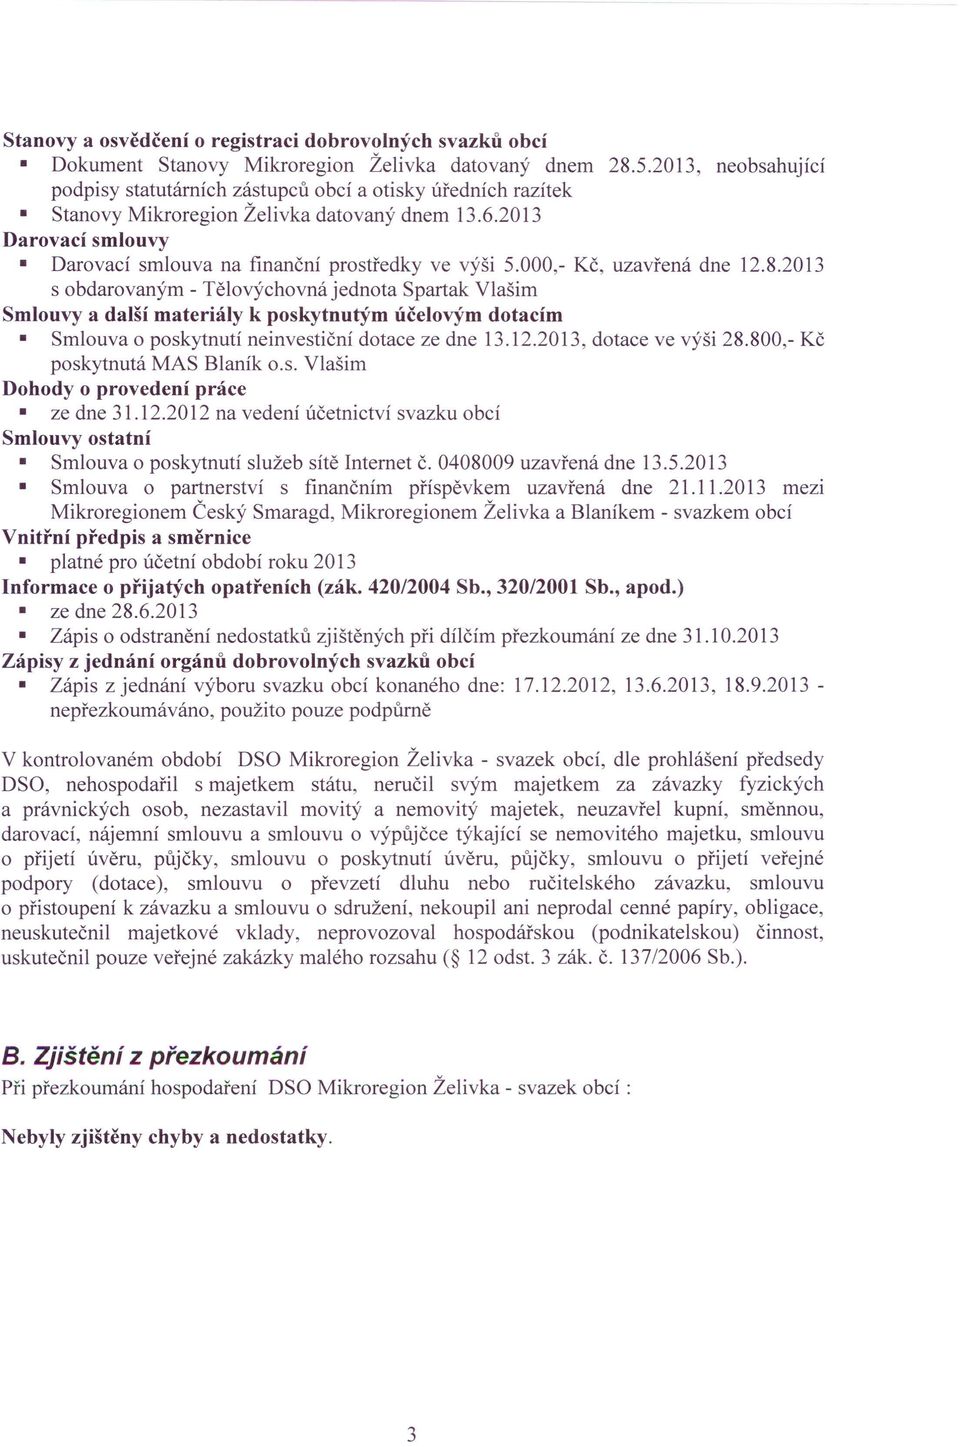 000,- Kč, uzavřená dne 12.8.2013 s obdarovaným - Tělovýchovná jednota Spartak Vlašim Smlouvy a další materiály k poskytnutým účelovým dotacím Smlouva o poskytnutí neinvestiční dotace ze dne 13.12.2013, dotace ve výši 28.